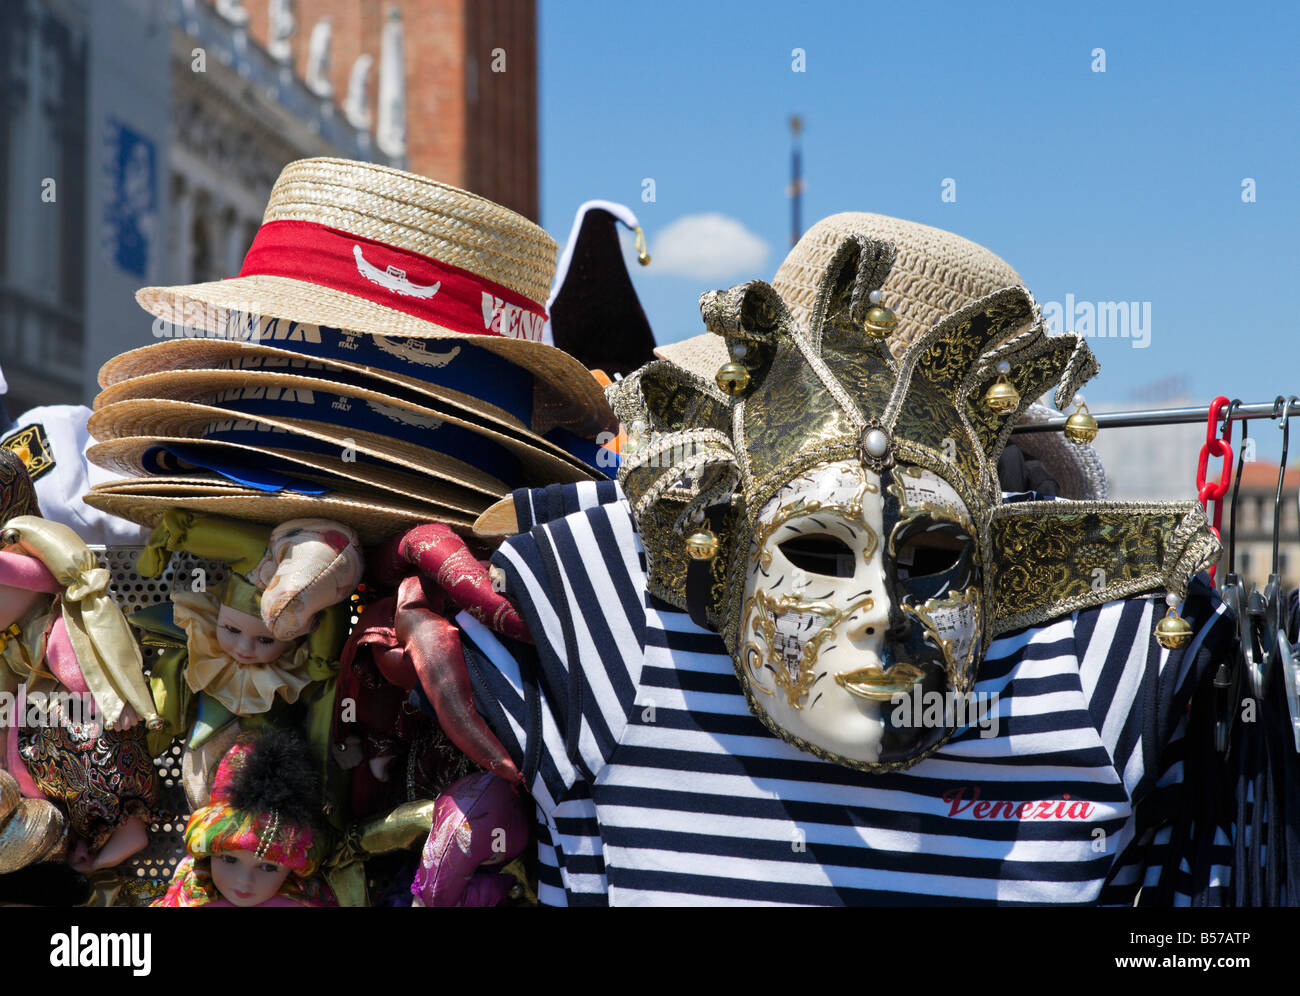 Marktstand verkaufen Venezia Strohhüte, Hemden und Karnevalsmasken, Piazzetta, San Marco, Venedig, Veneto, Italien Stockfoto